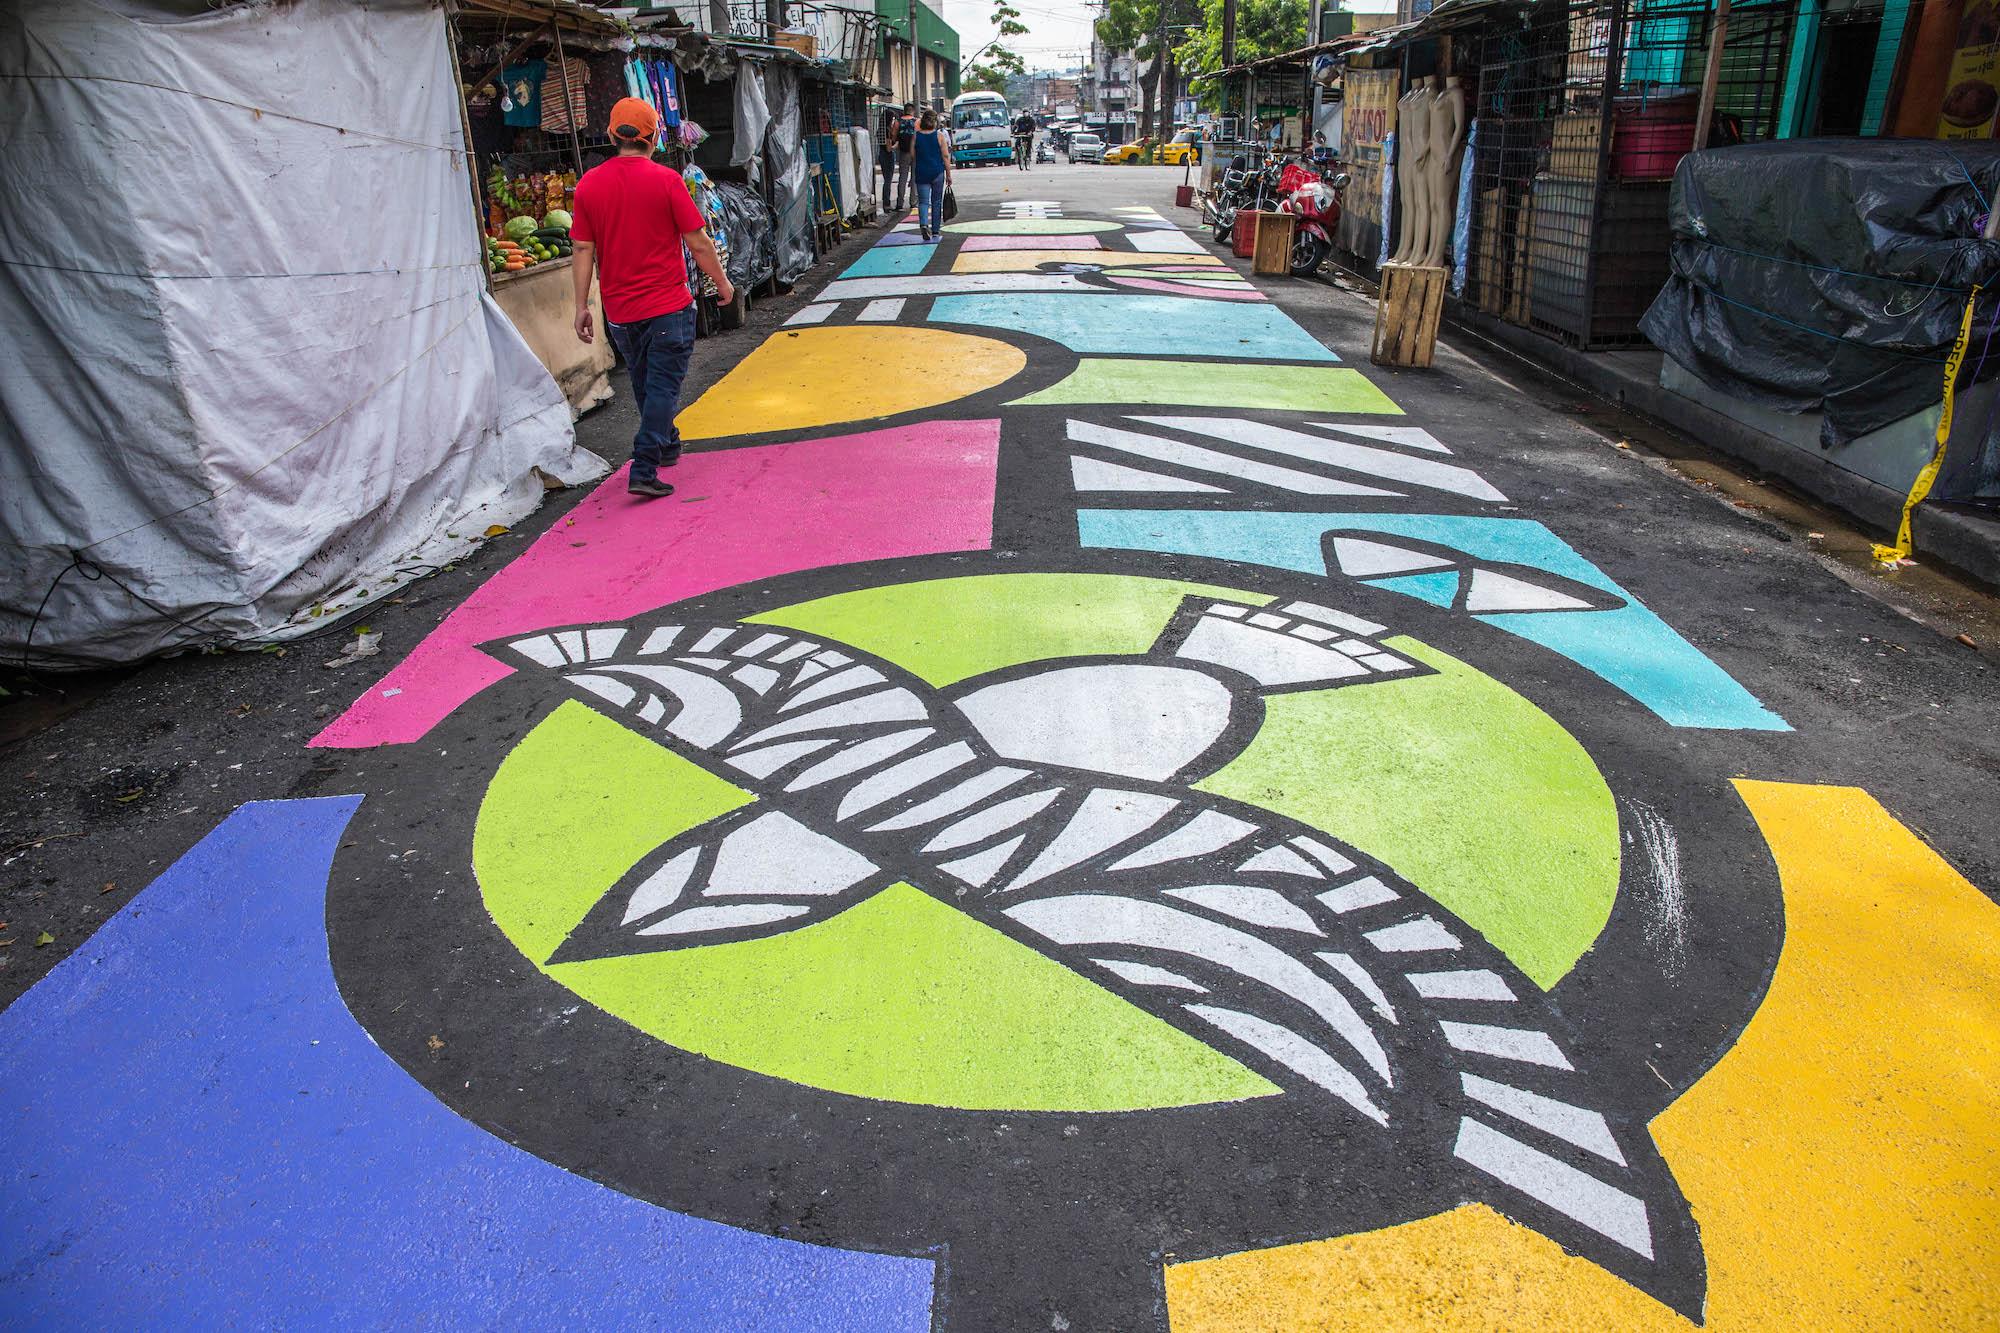 Mural elaborado sobre la calle Delgado en el centro de San Salvador, a cargo del artista salvadoreño Rodo Díaz. Foto cortesía de Glasswing.